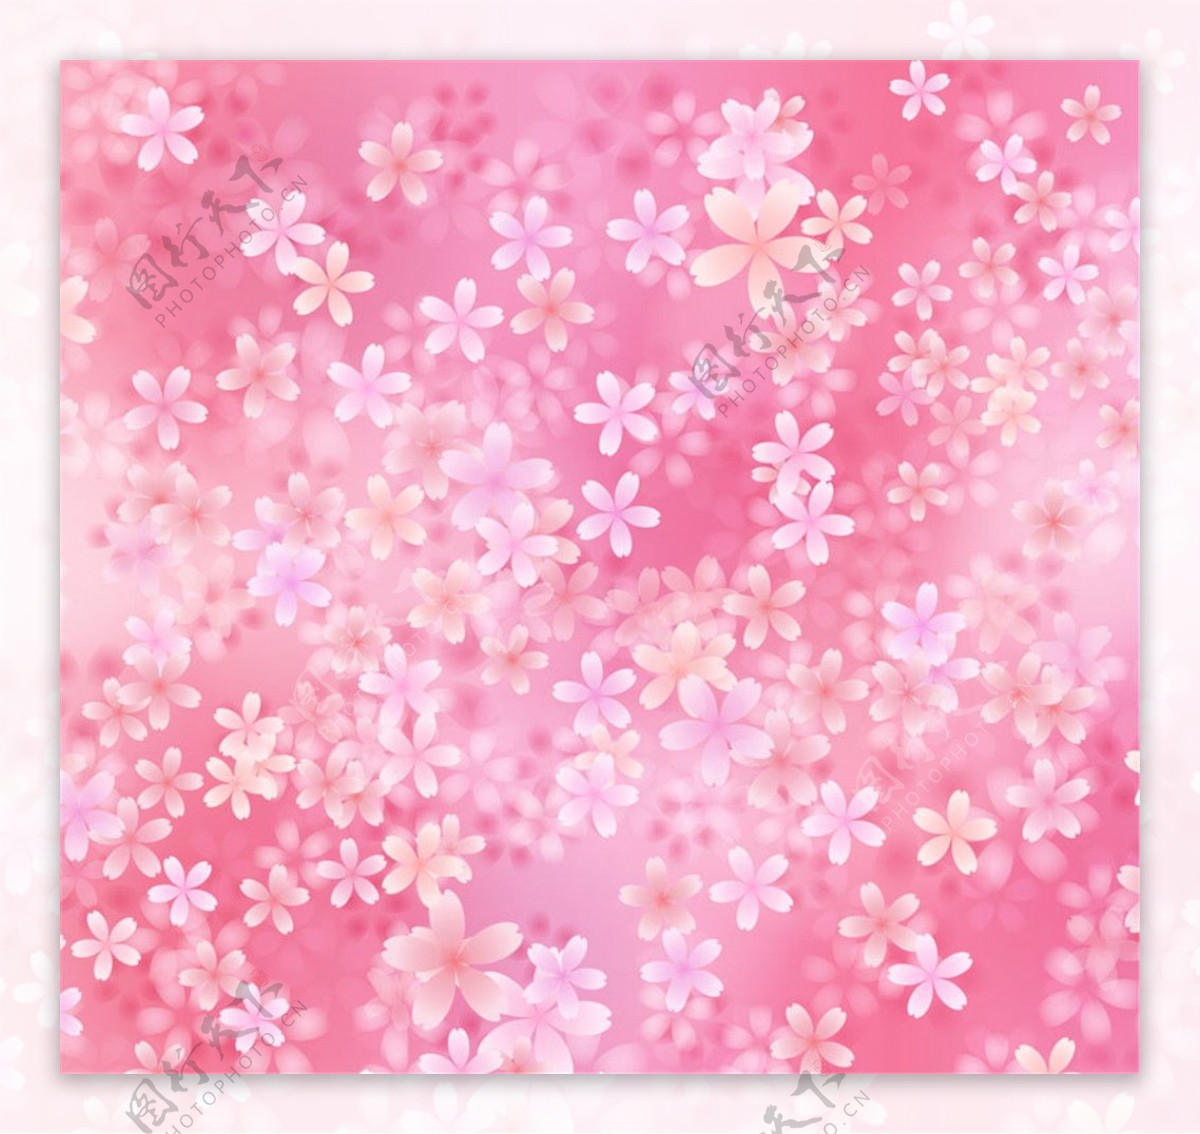 粉色樱花无缝背景矢量素材